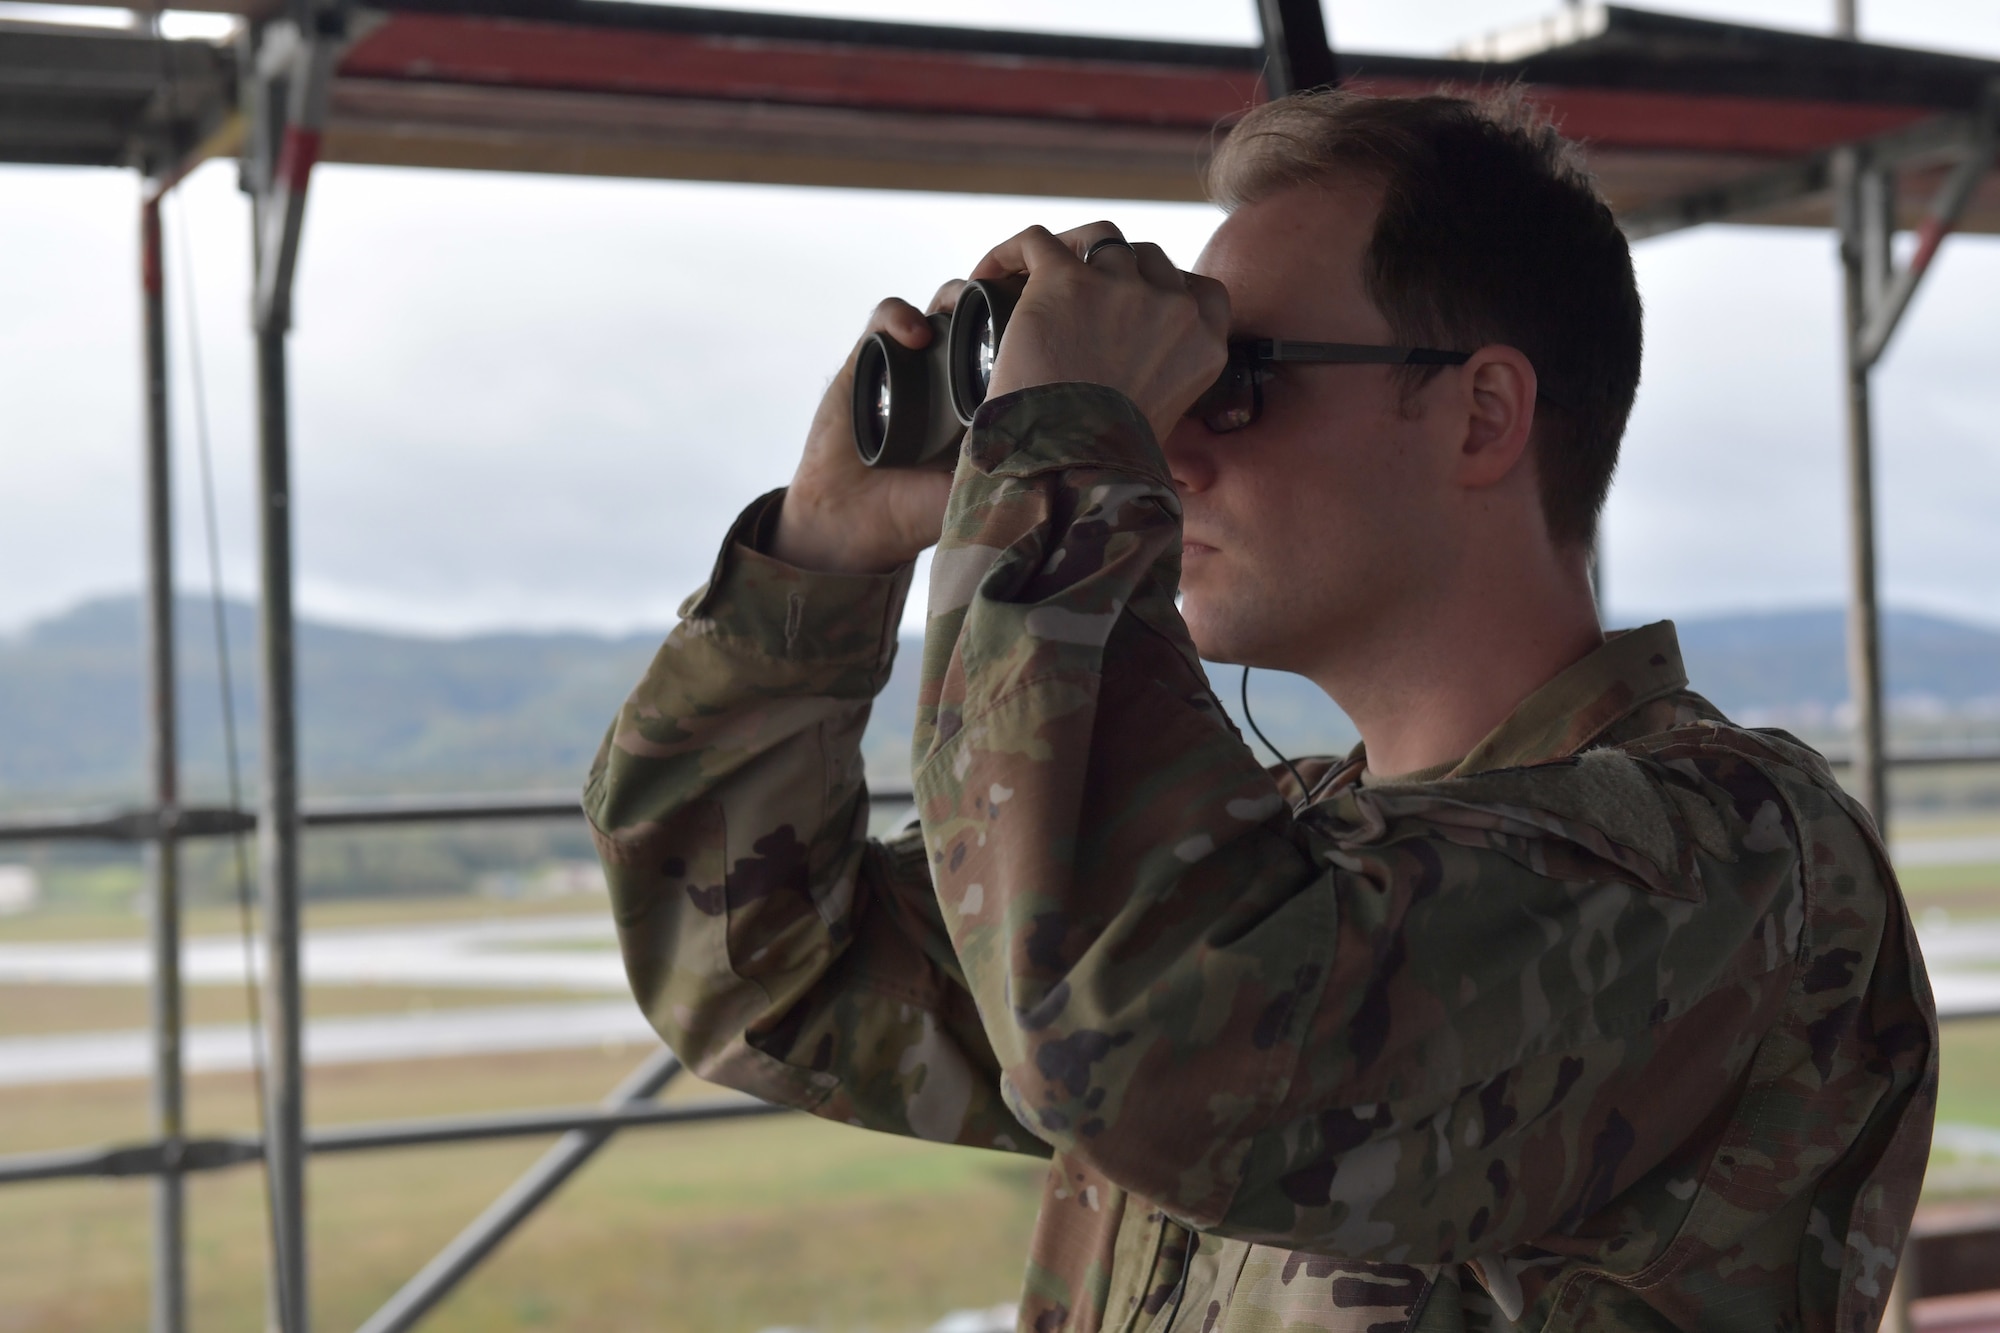 An Airman looks through binoculars.